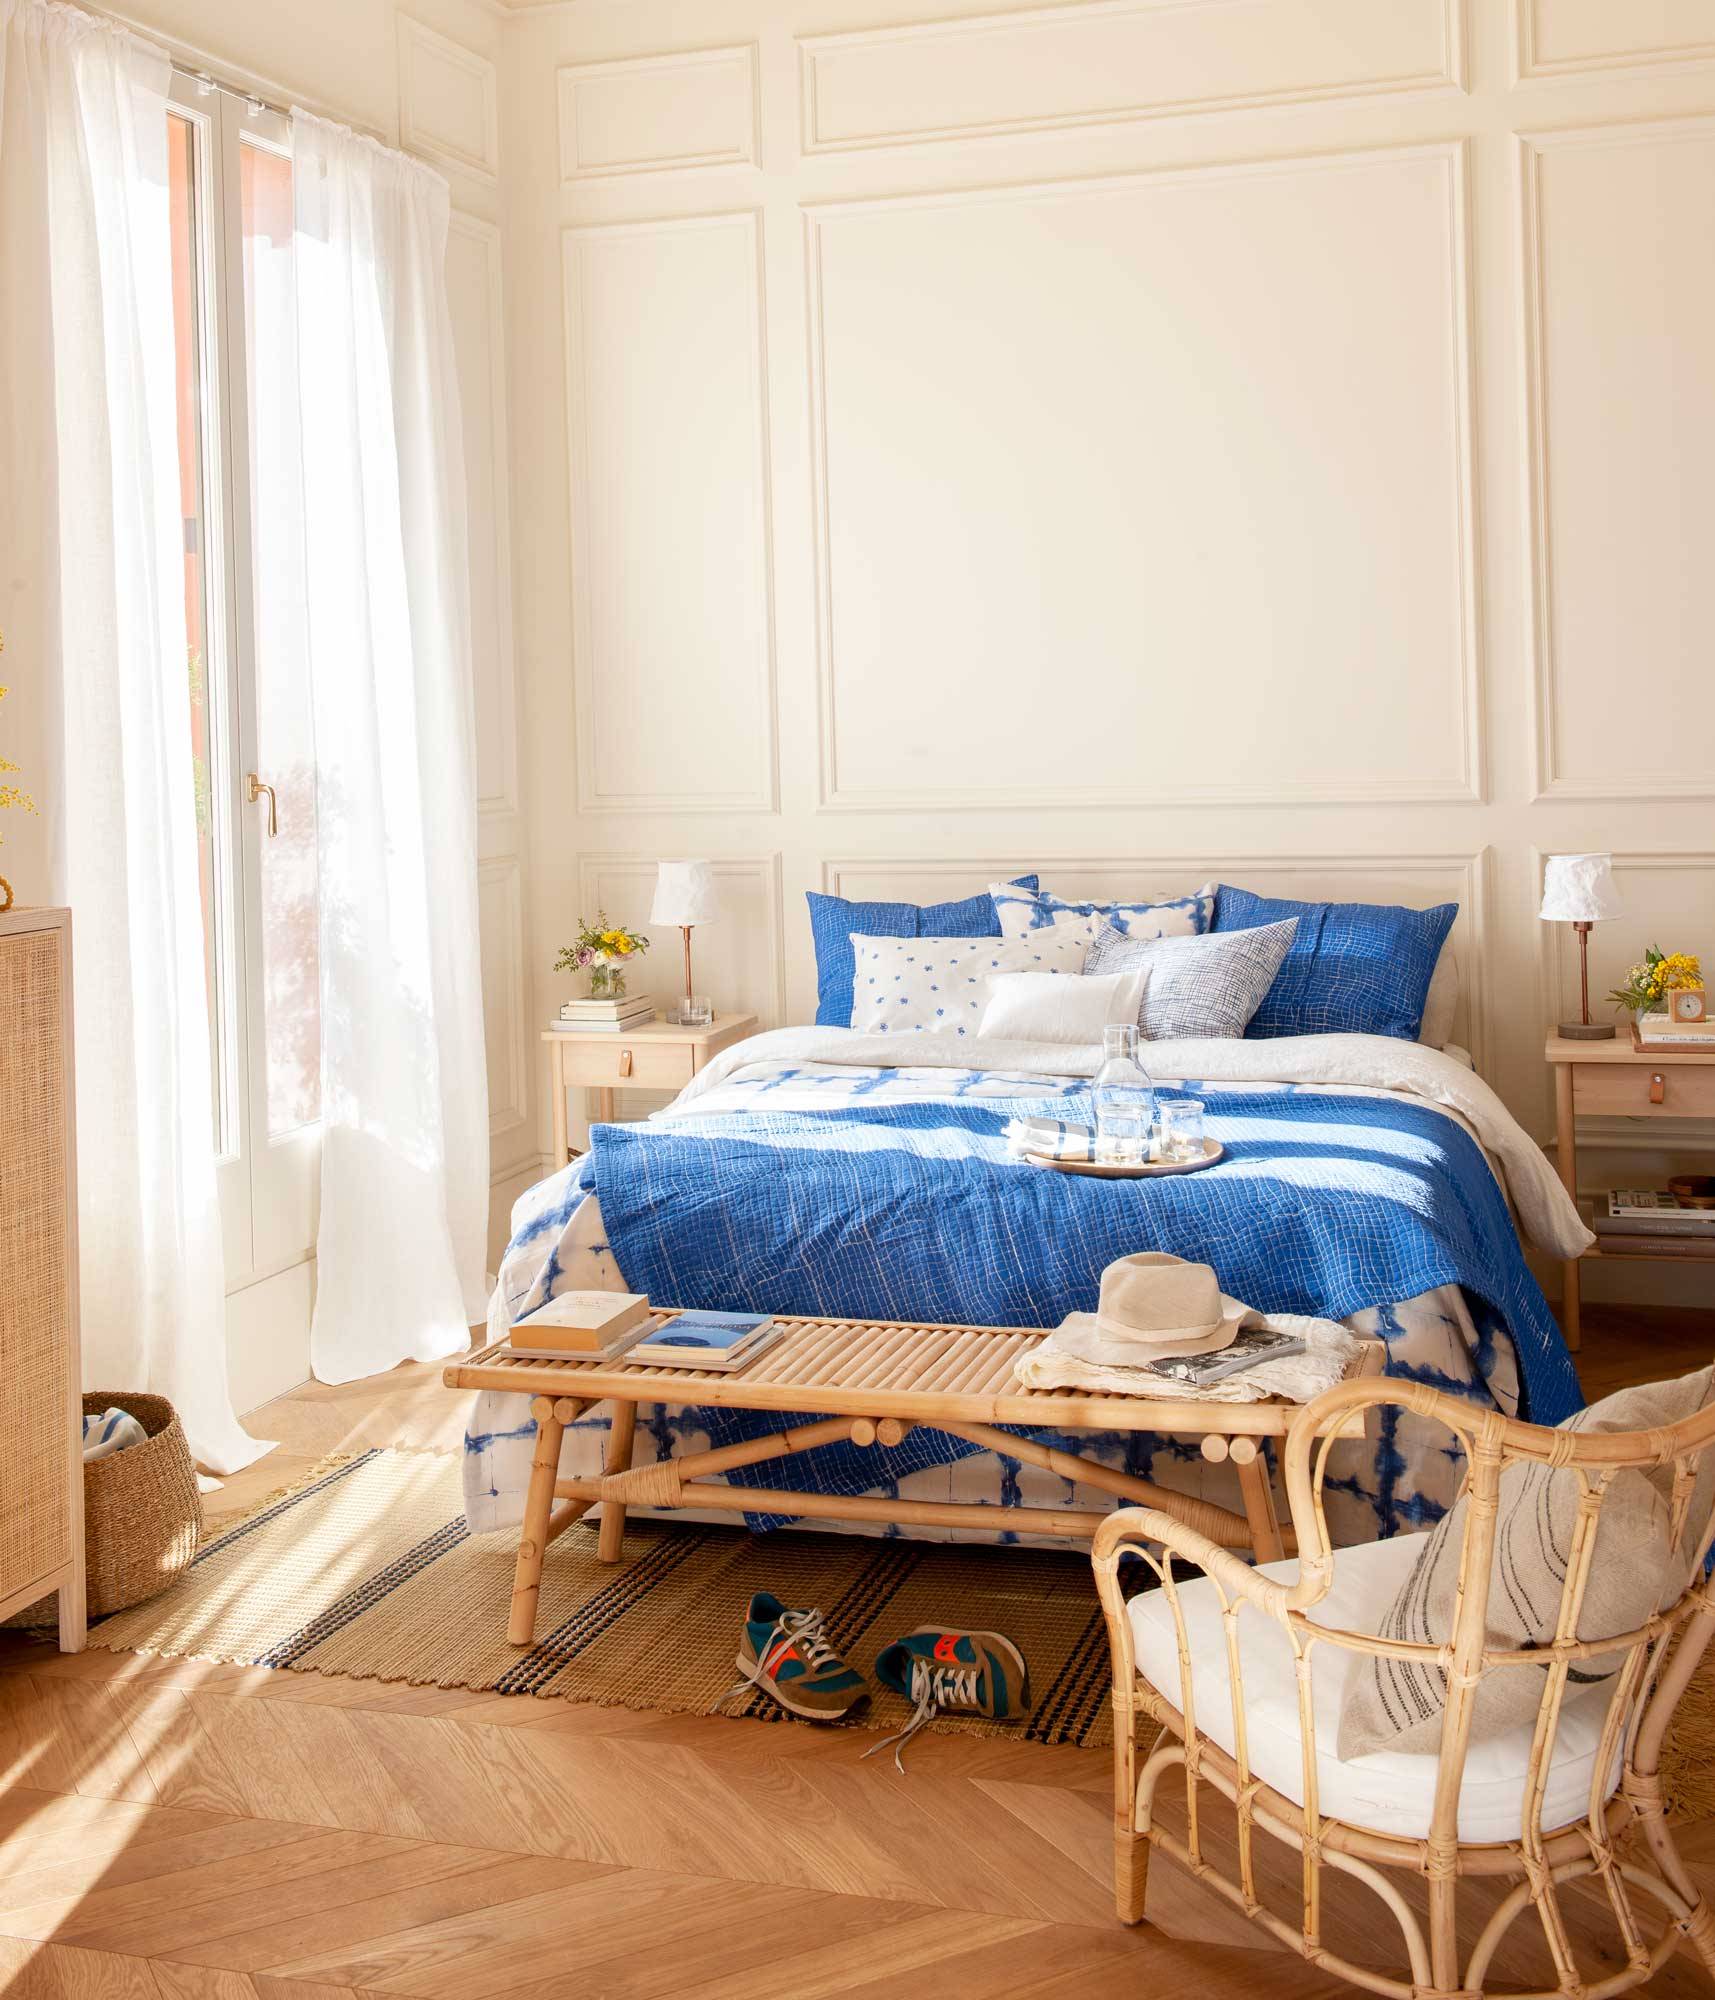 Dormitorio con molduras en la pared, muebles de madera y fibras naturales, y ropa de cama en azul. 